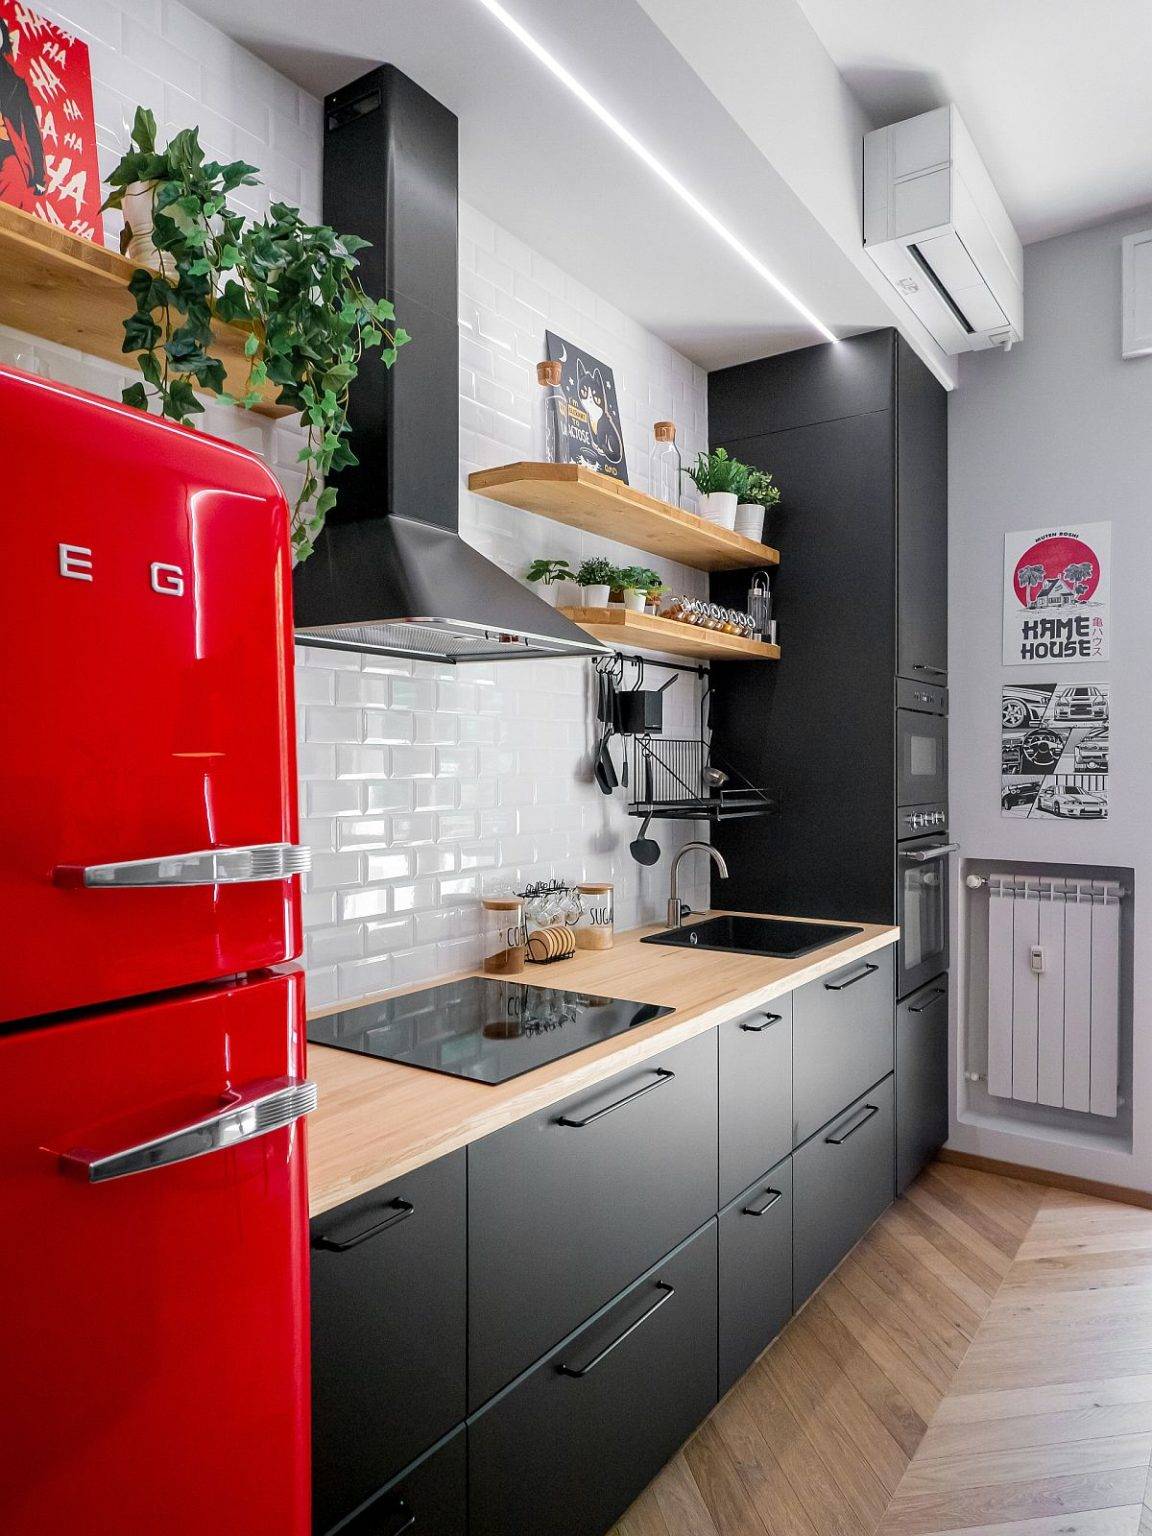 Phòng bếp công nghiệp sang chảnh với sự kết hợp ăn ý giữa sắc đỏ tươi từ tủ lạnh, màu xám từ tủ bếp và tường chắn màu trắng.